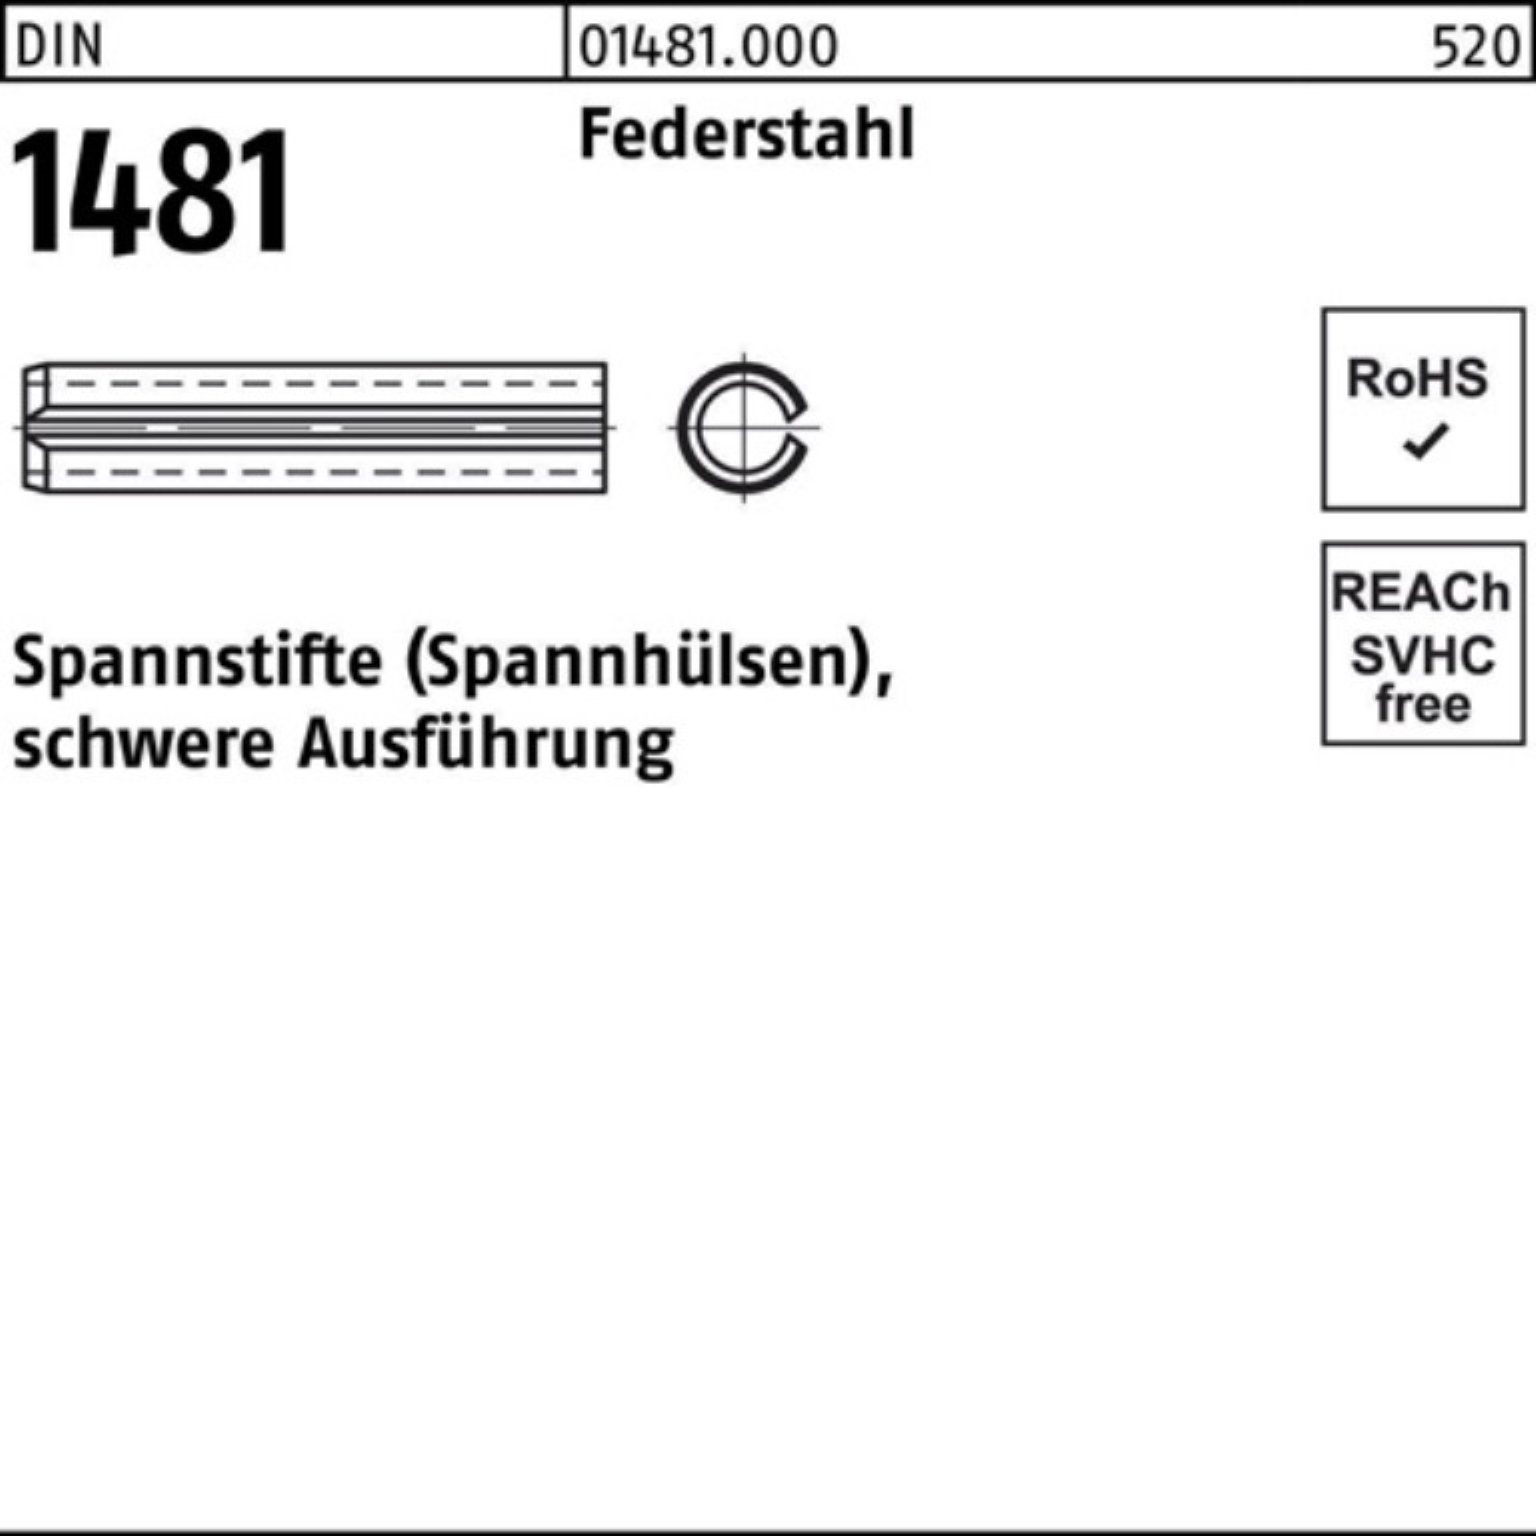 Reyher Spannstift Spannstift 200er Federstahl schwere DIN 20 18 Ausführung Pack 1481 2x